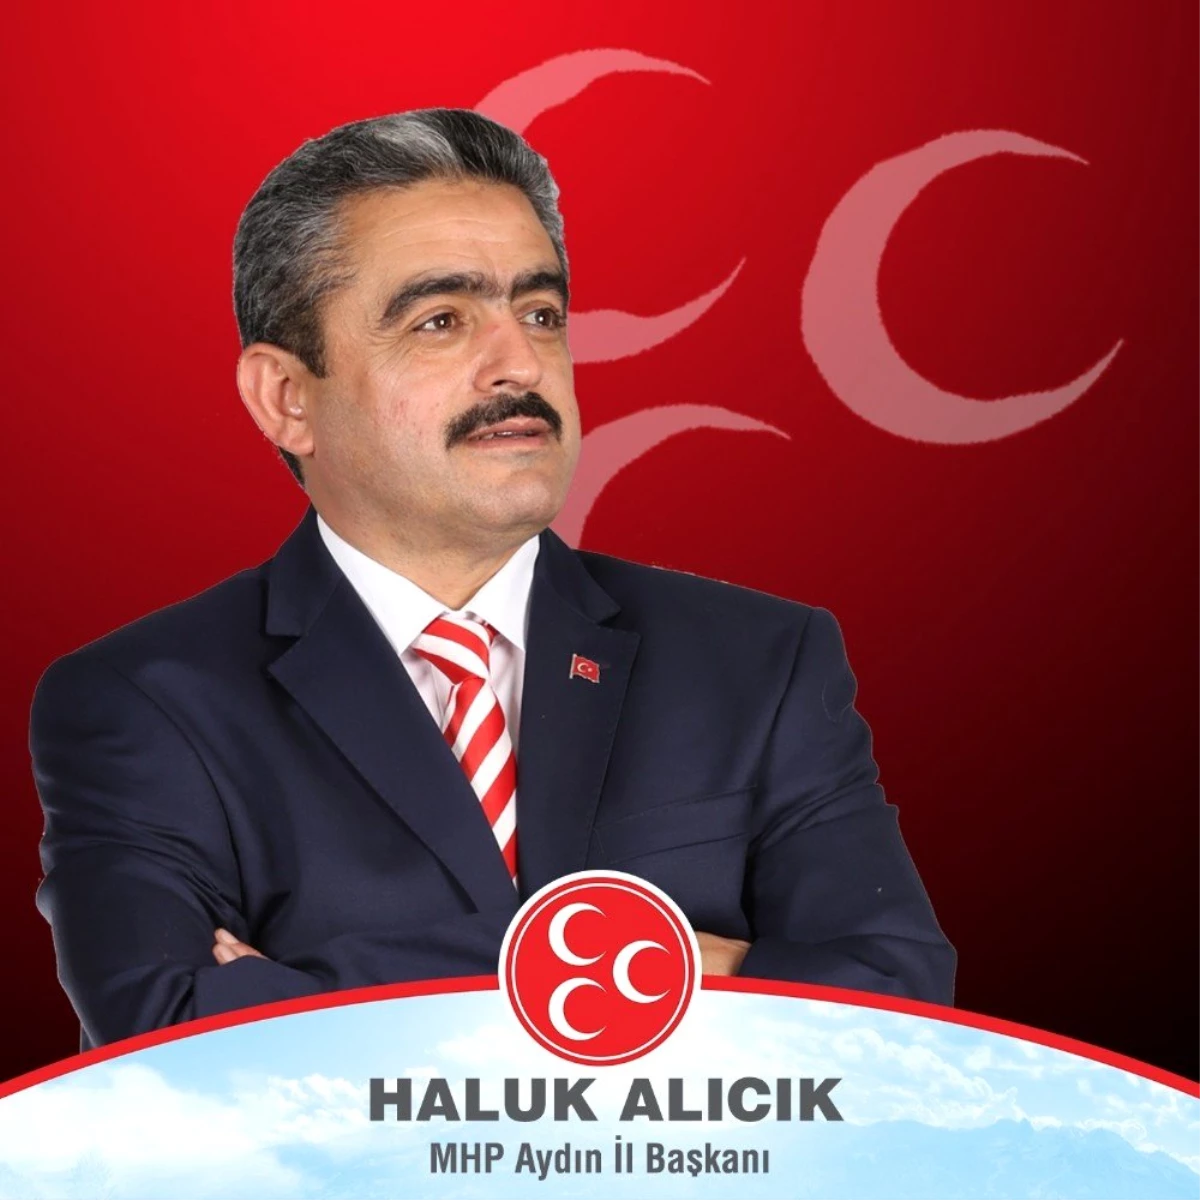 MHP İl Başkanı Alıcık, "Her yeni gün ve her yeni yıl yeni bir fırsattır"